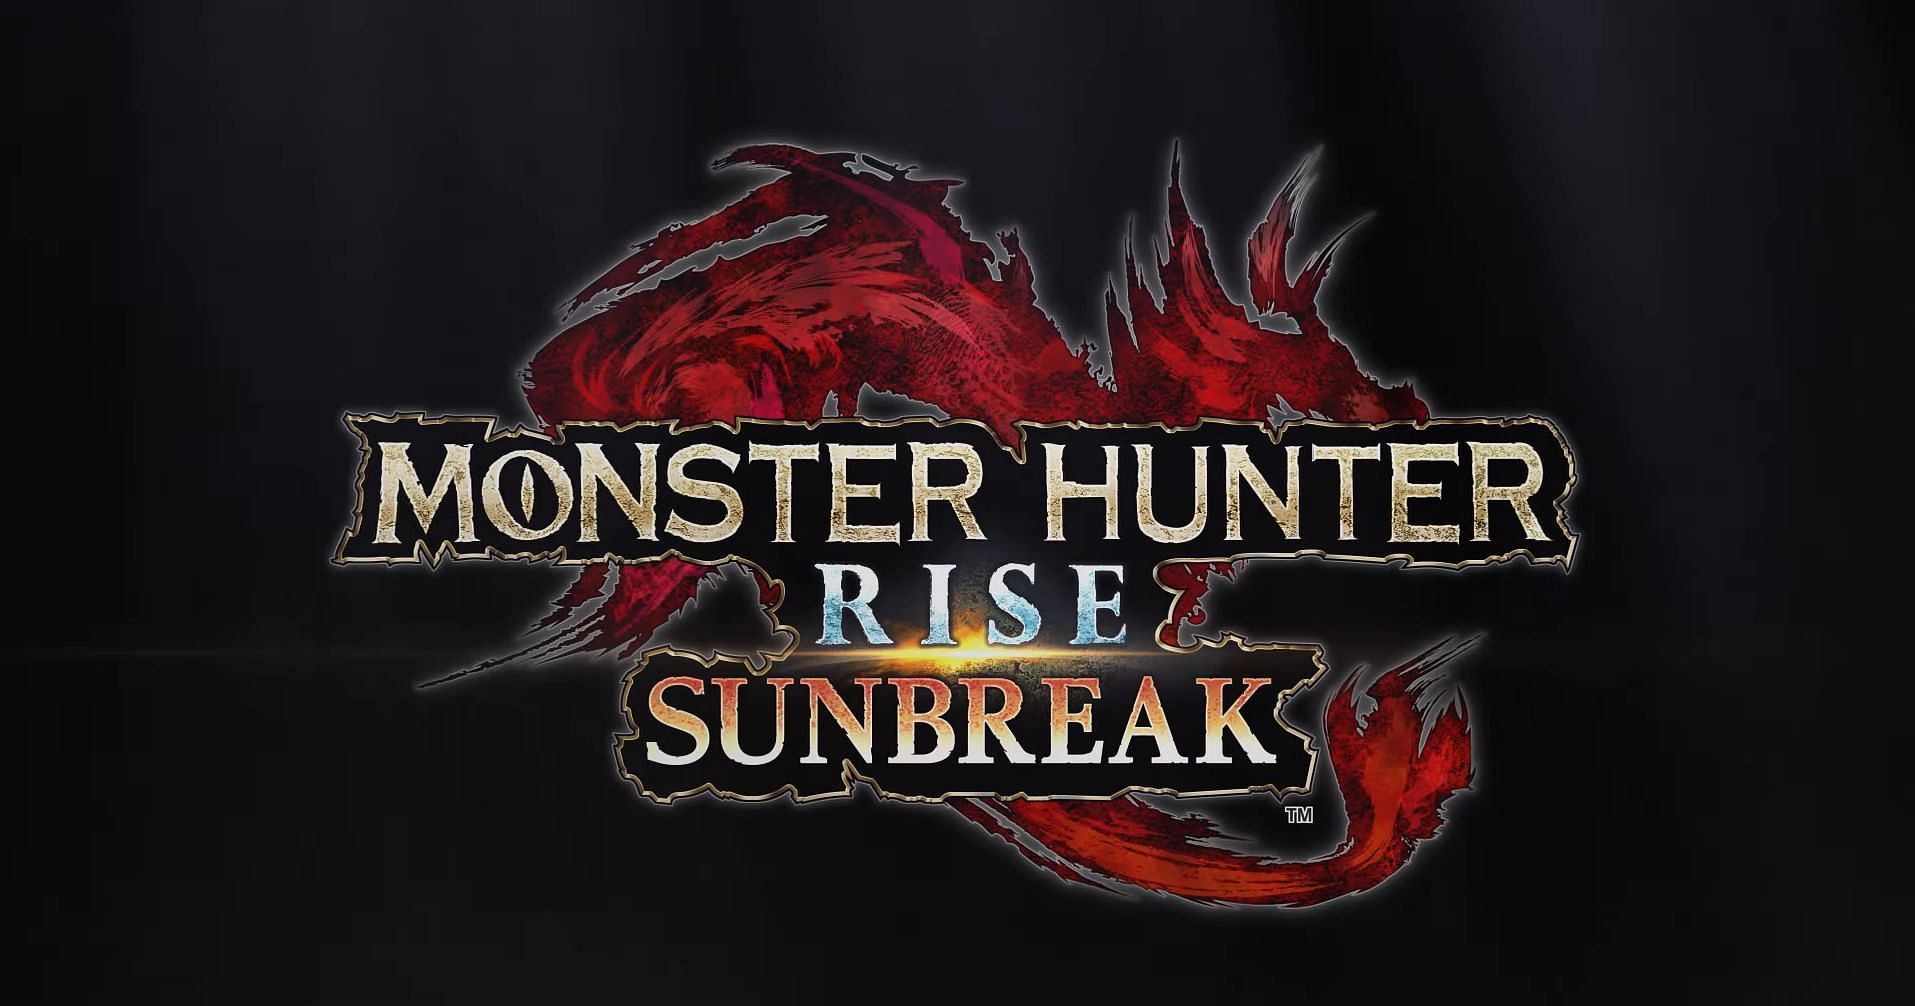 A promotional image for the Sunbreak DLC (Image via Capcom)